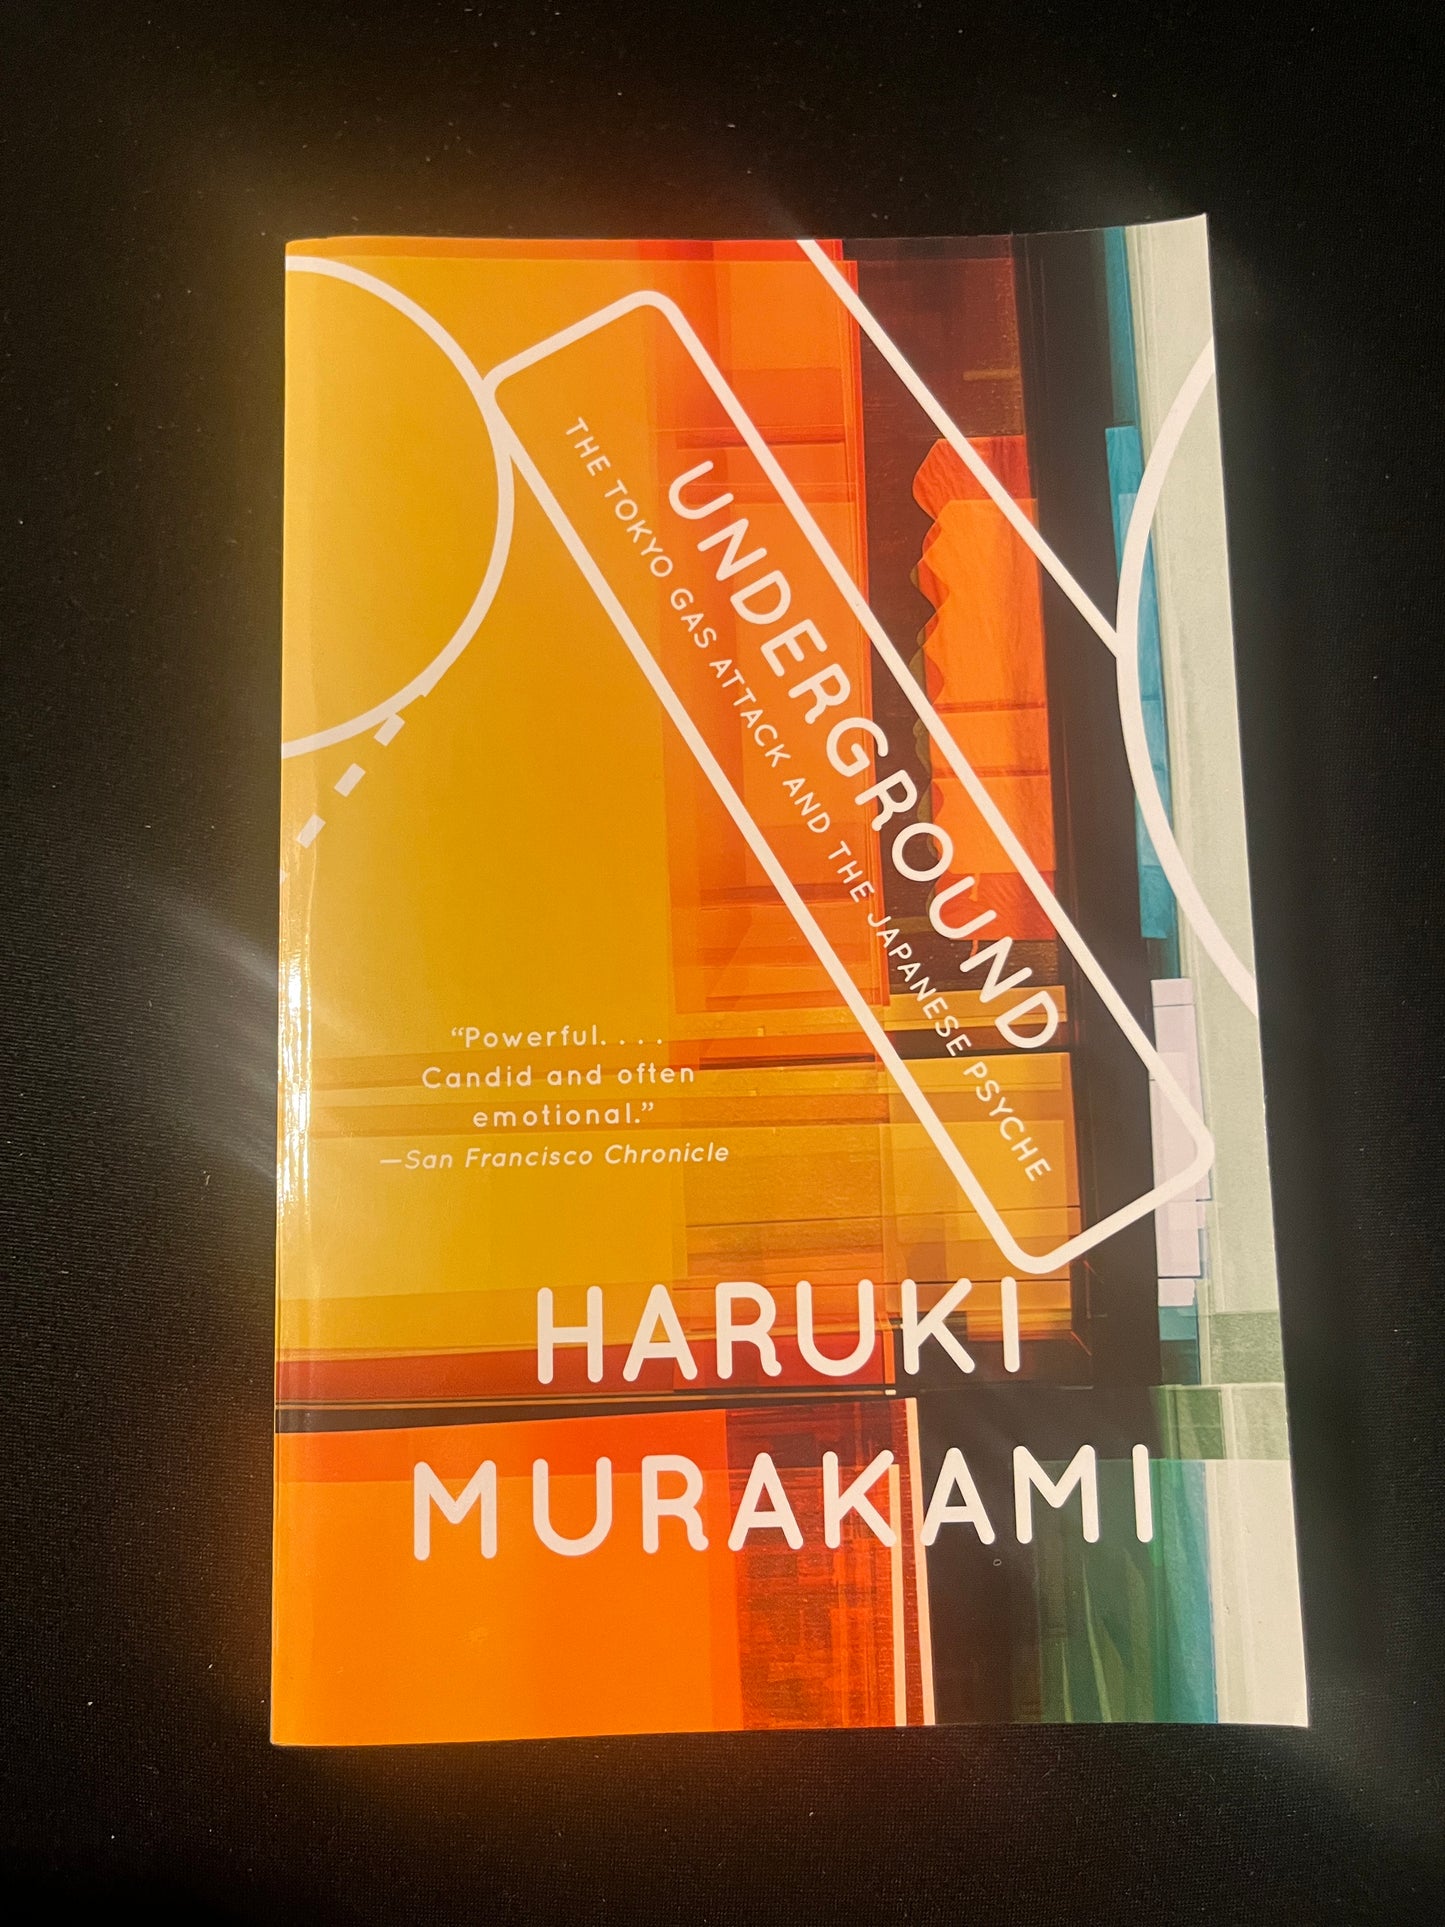 UNDERGROUND: THE TOKYO GAS ATTACK AND THE JAPANESE PSYCHE by Haruki Murakami